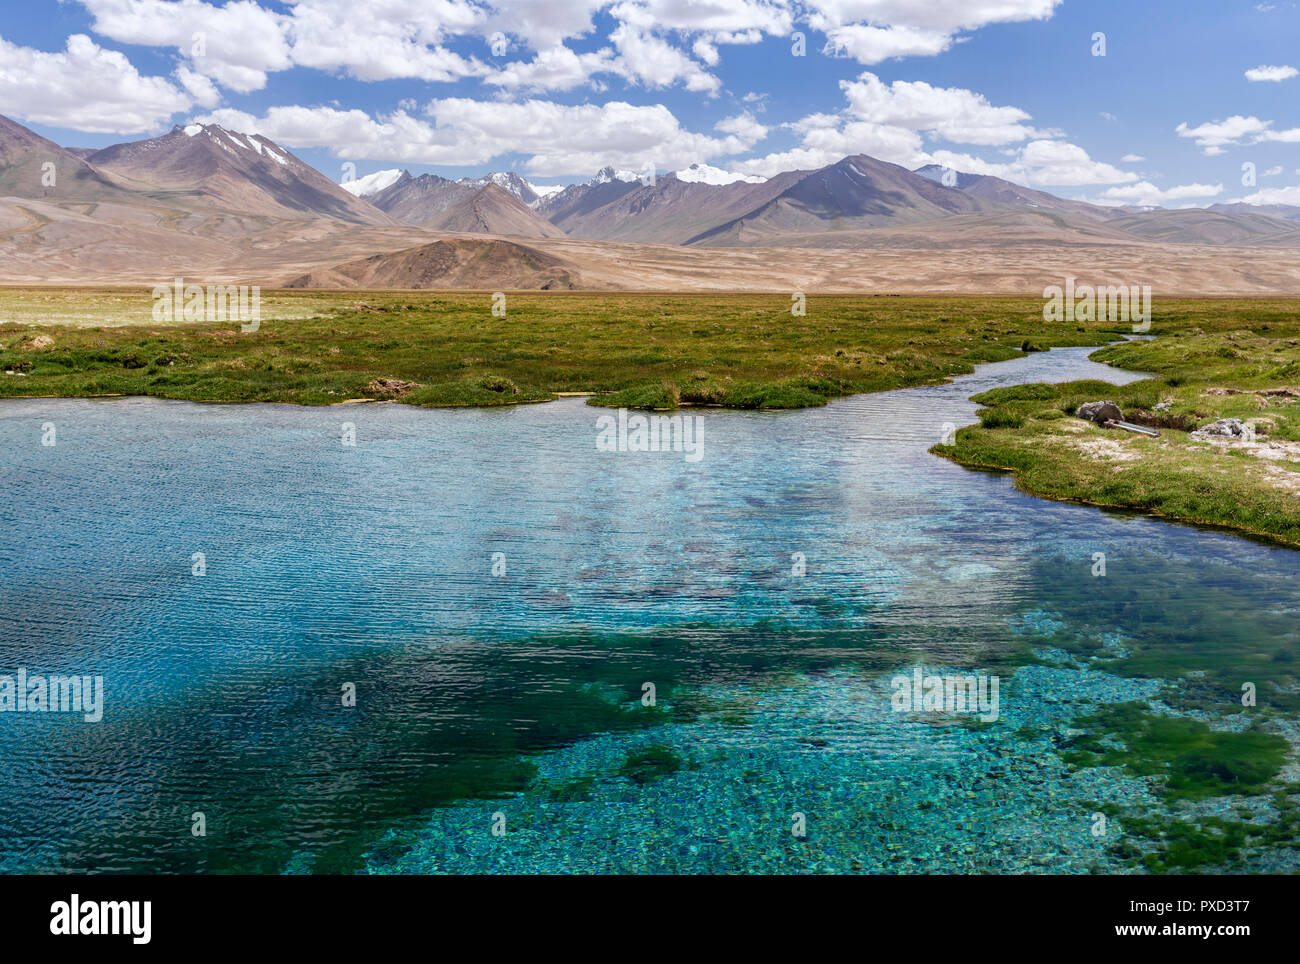 Ak-Balik ist eine heilige Quelle mit klarem, blauen Wasser entlang der Pamir Highway nicht weit von Alichur, Pamir, Gorno-Badakhshan, Tadschikistan befindet. Stockfoto